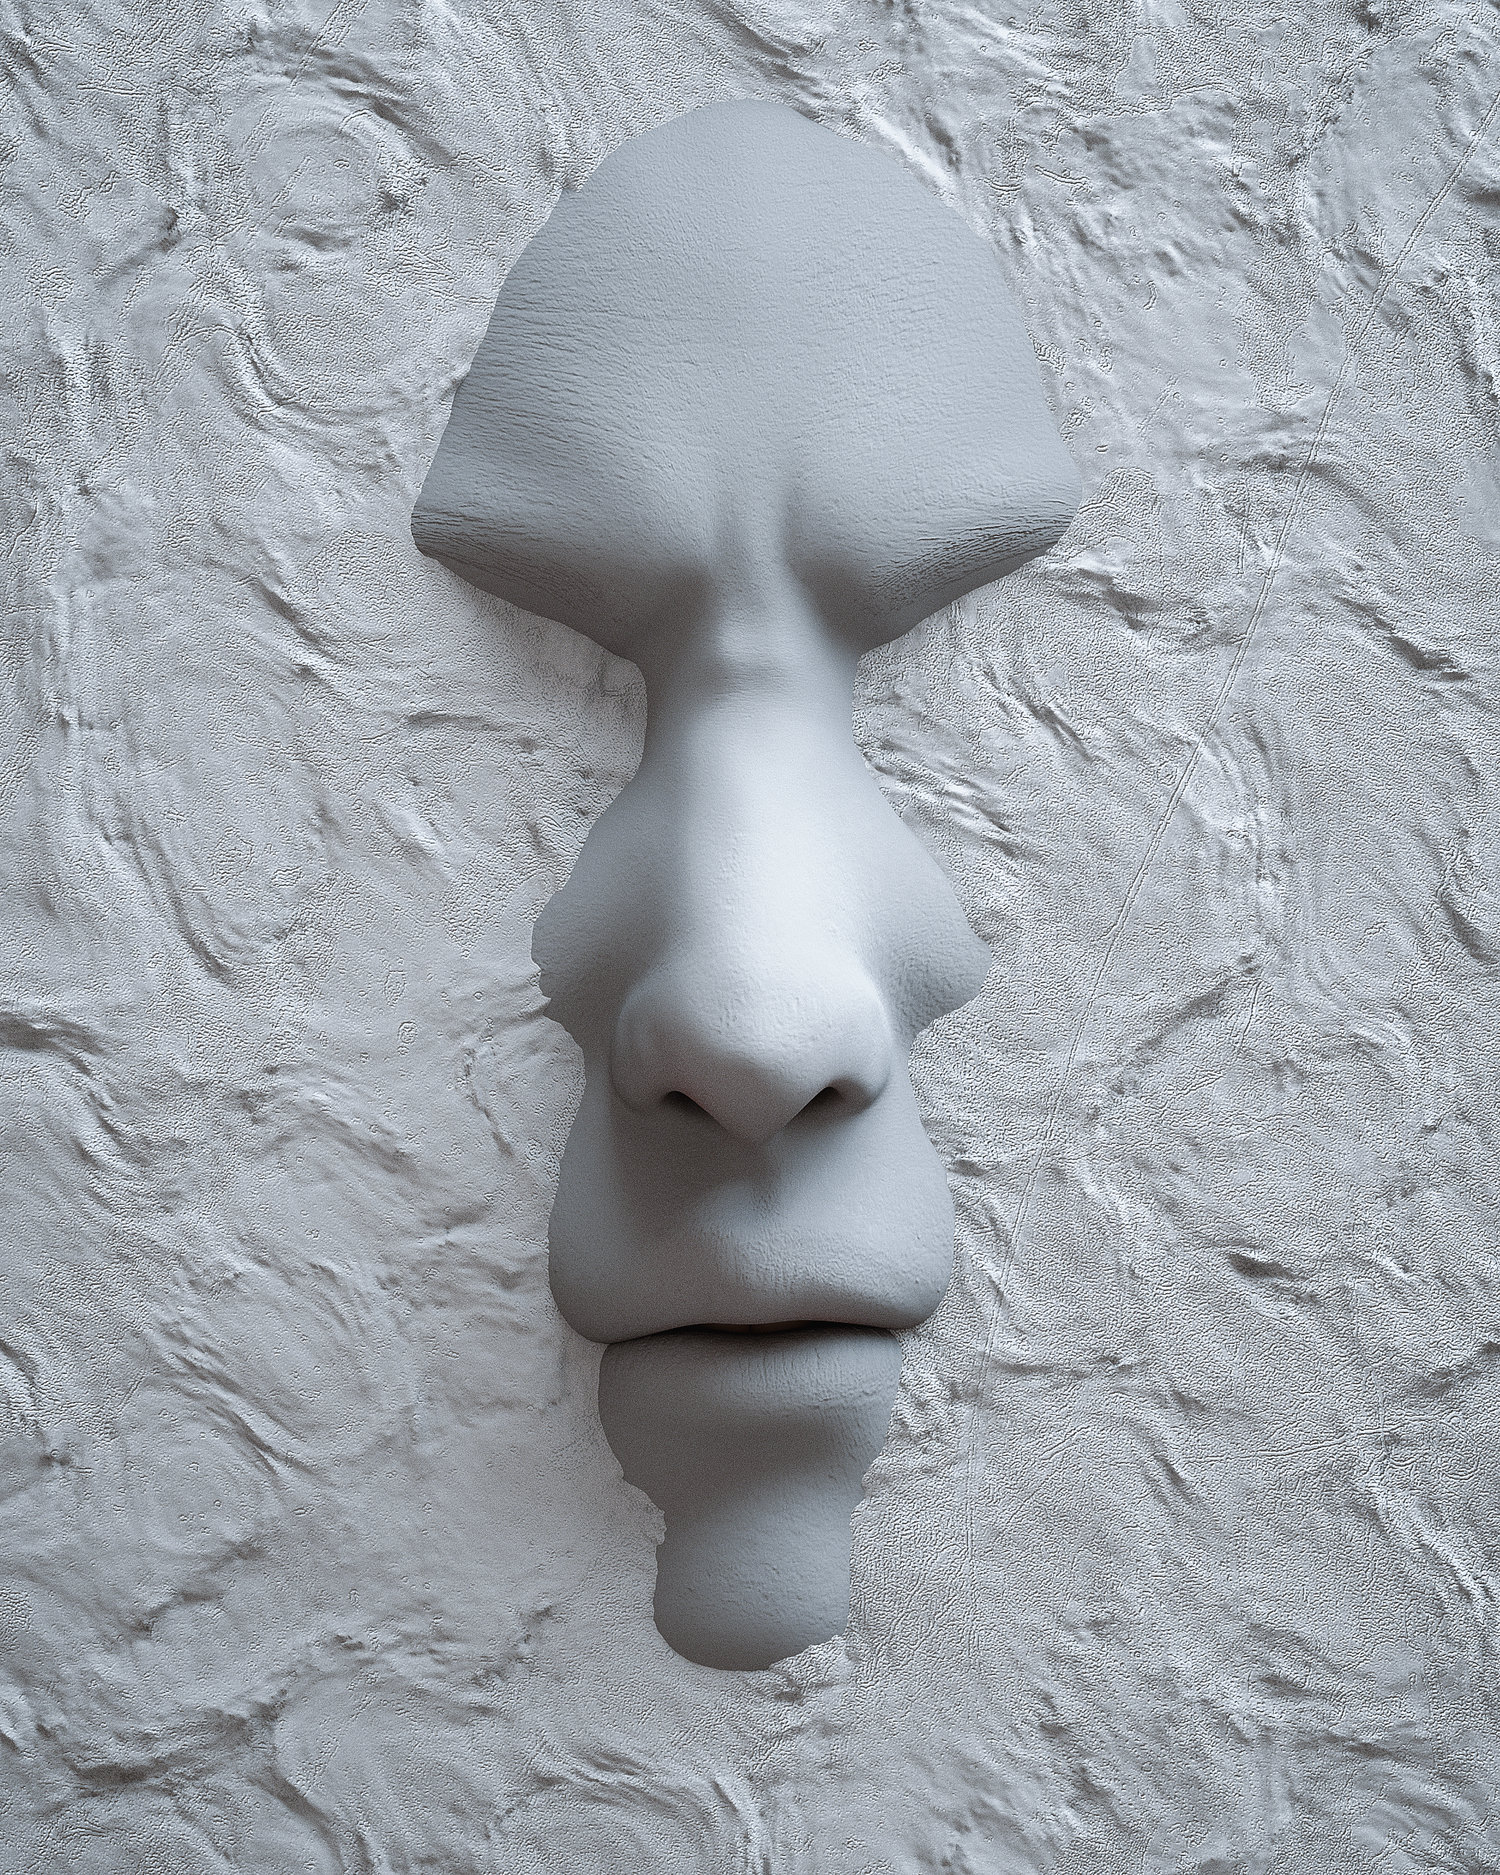 穿透石膏人体面部雕塑创意[08-08-17]-Blend.jpg